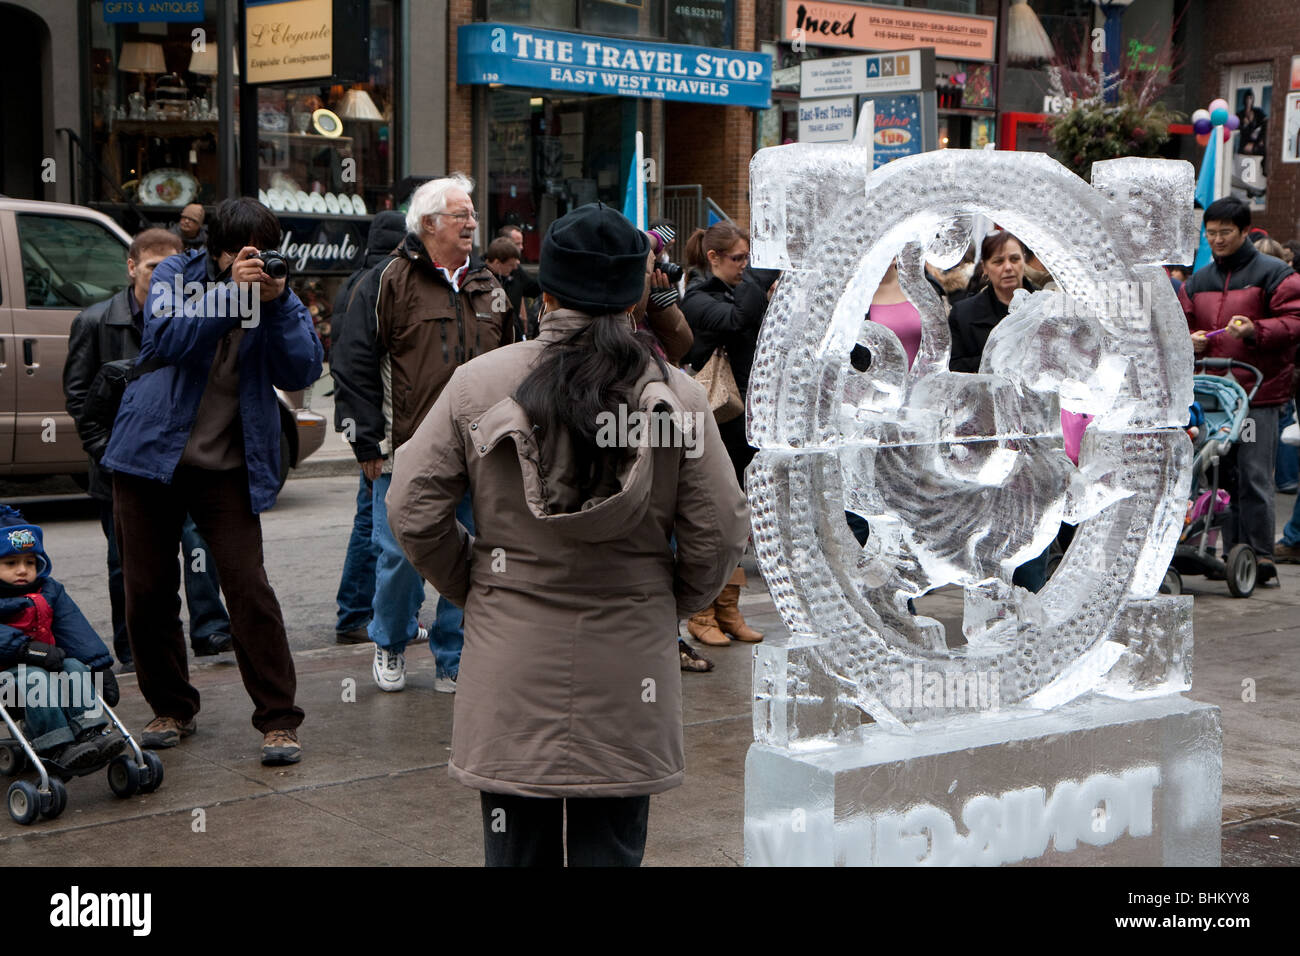 Les personnes prenant photo sculpture de glace en plein air d'hiver Banque D'Images